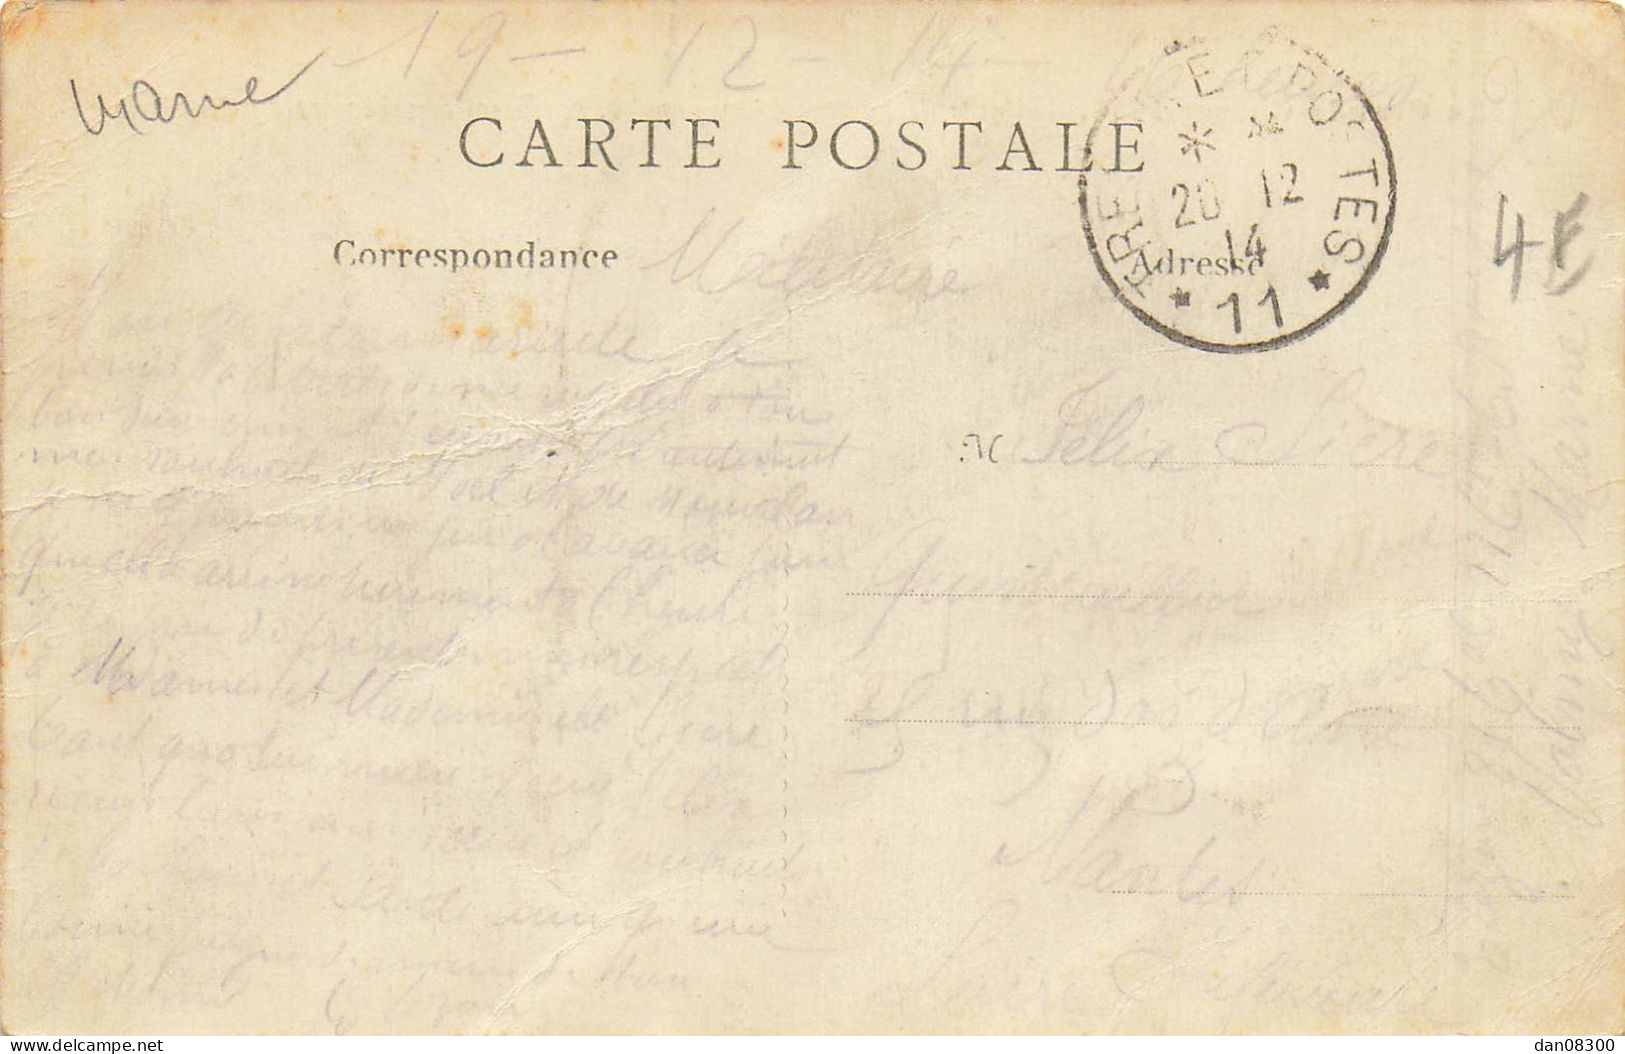 LA GRANDE GUERRE 1914 ROUTE DE LA FERE CHAMPENOISE APRES UN ENGAGEMENT DE CAVALERIE - War 1914-18